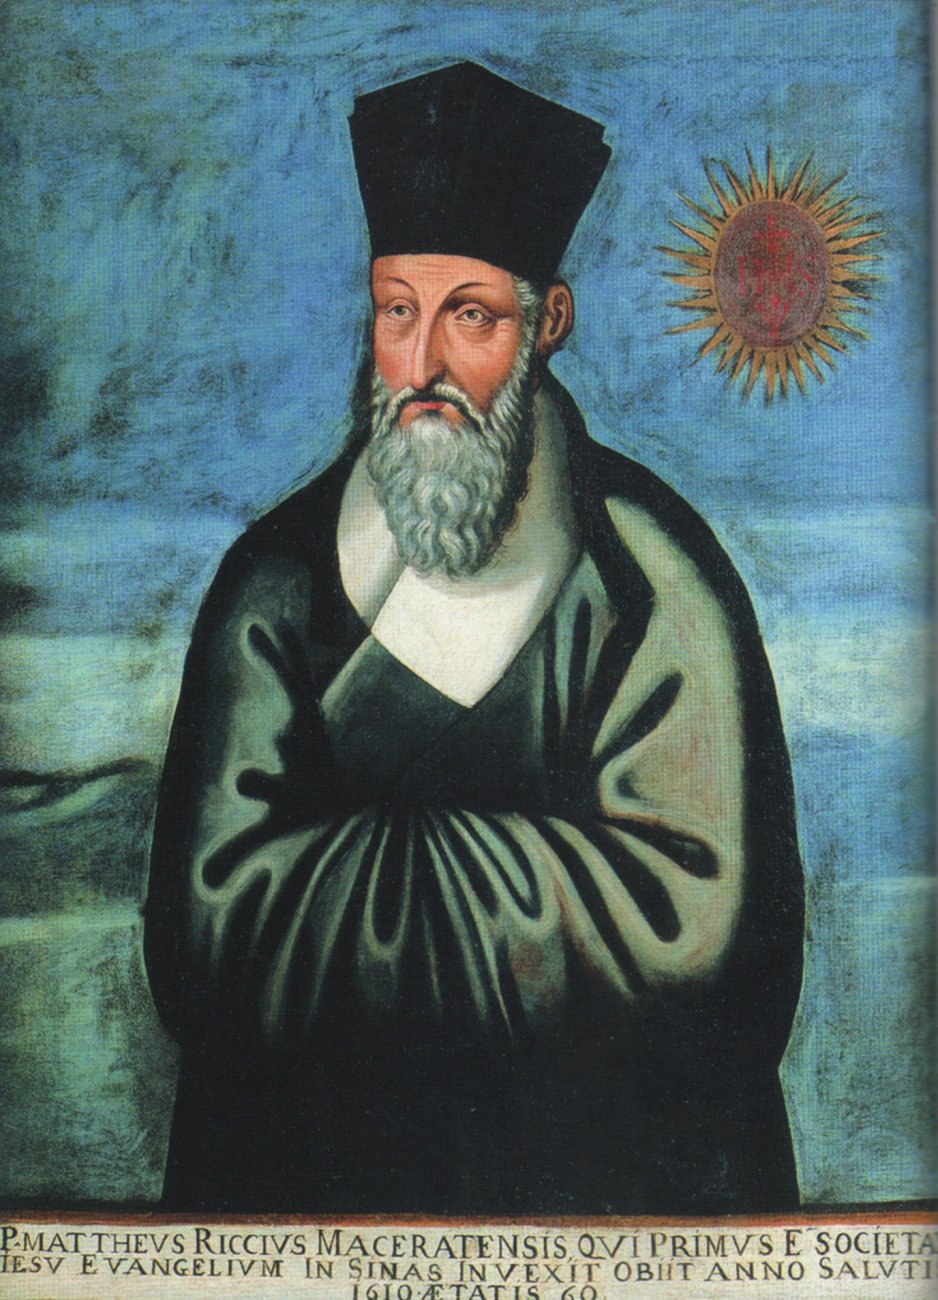 Pater Manuel Perreira: Porträt, gemalt in der Nacht nach Riccis Tod, gemalt mit offenen Augen, als ob er auch nach dem Tode wache